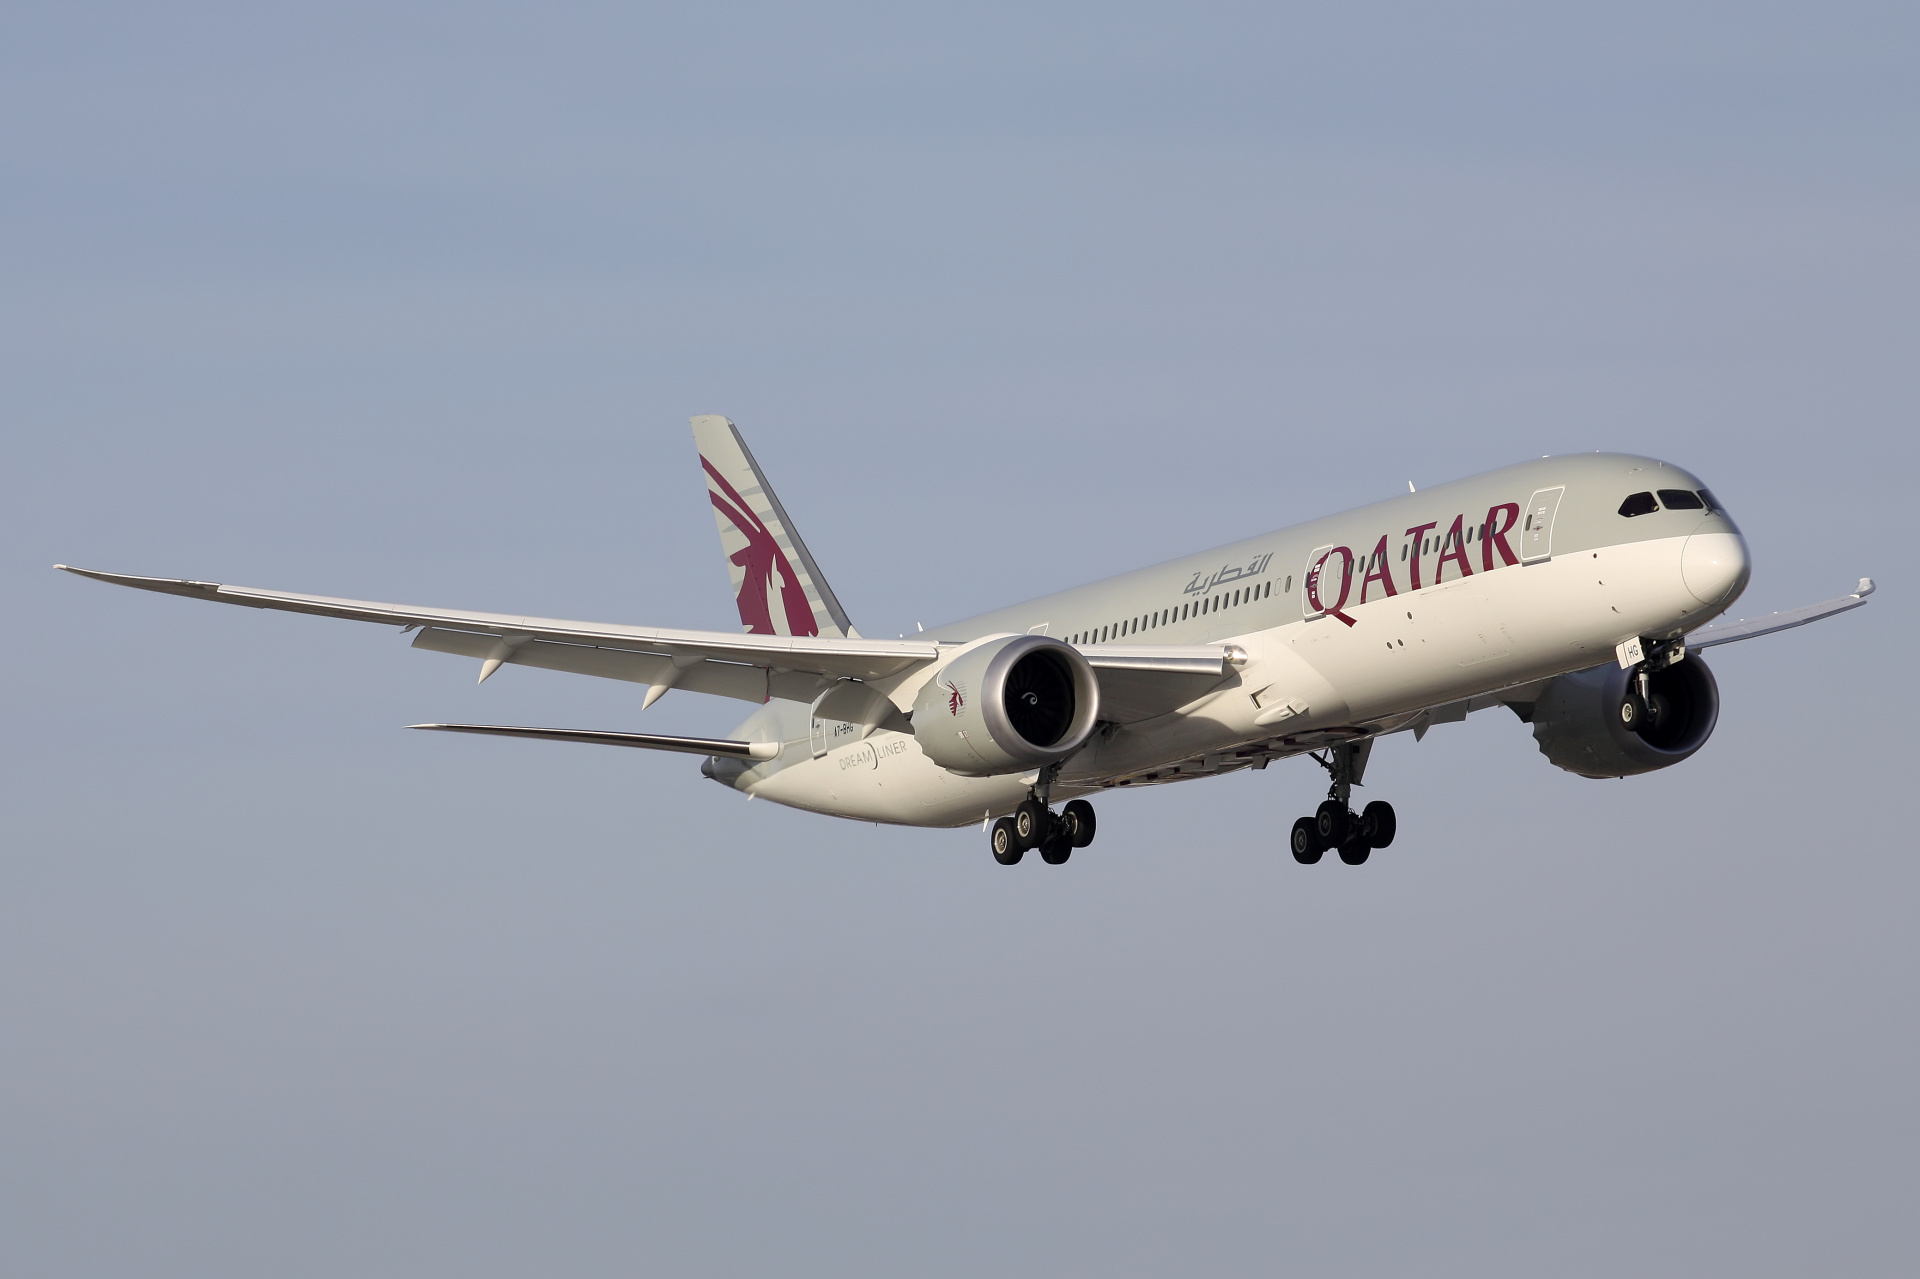 A7-BHG (Aircraft » EPWA Spotting » Boeing 787-9 Dreamliner » Qatar Airways)